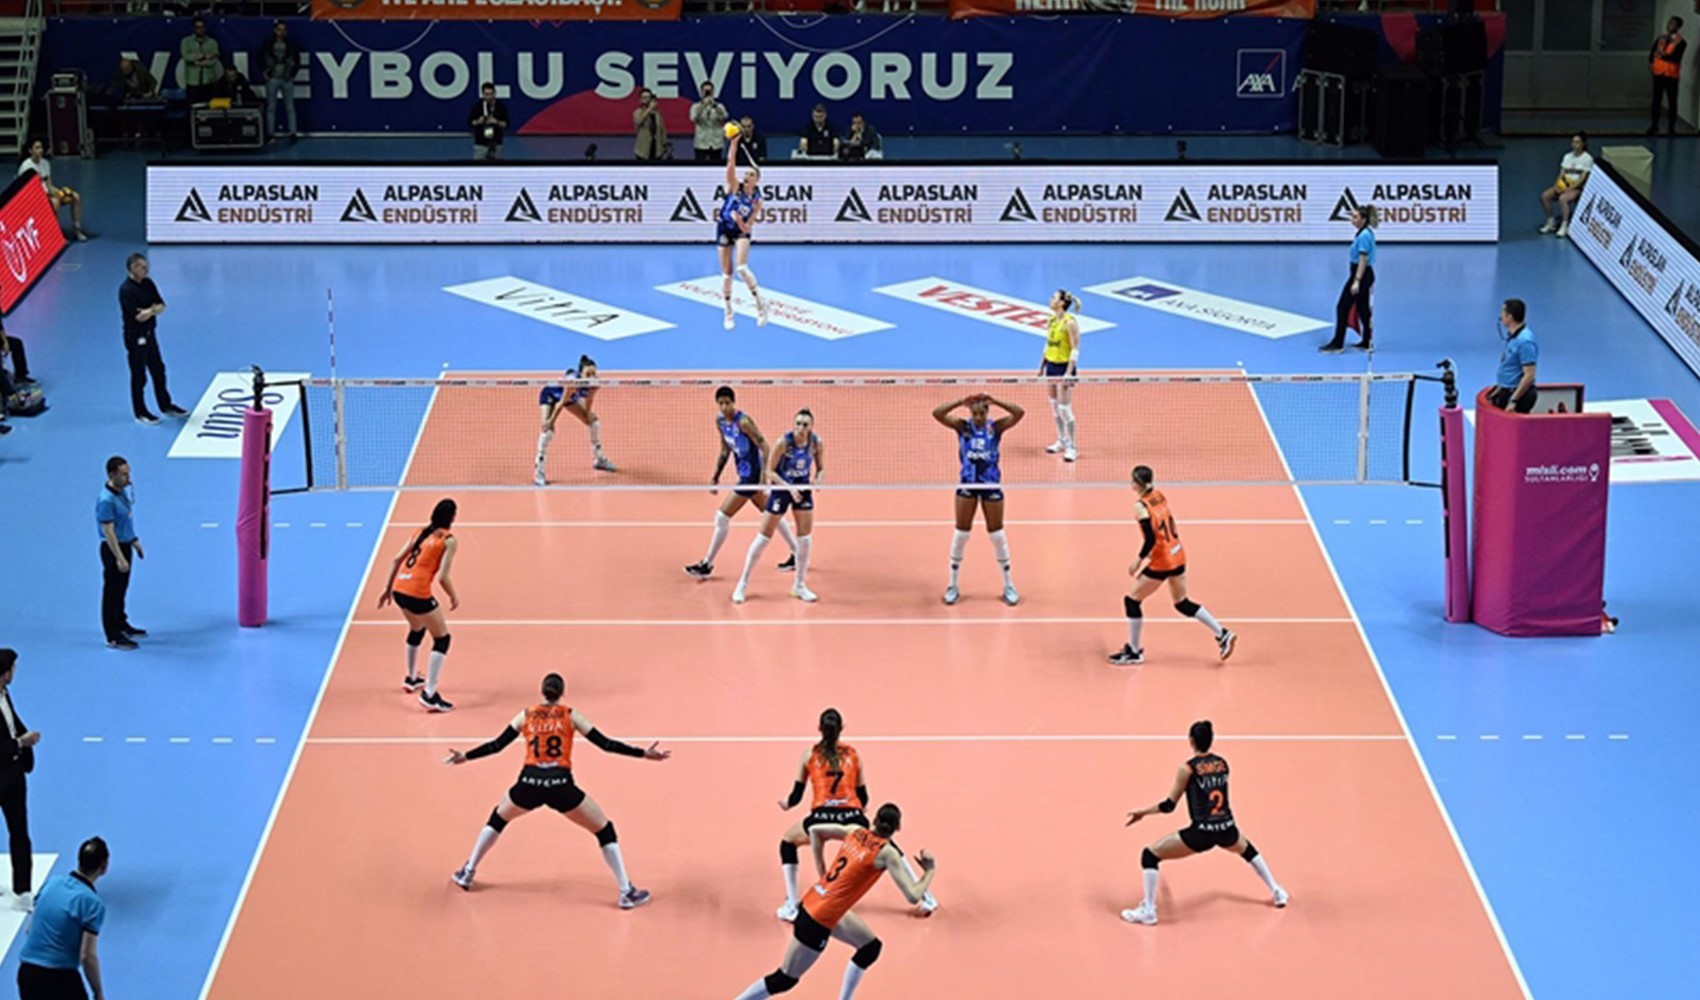 Kupa Voley'de dev final! Fenerbahçe Opet - Eczacıbaşı Dynavit